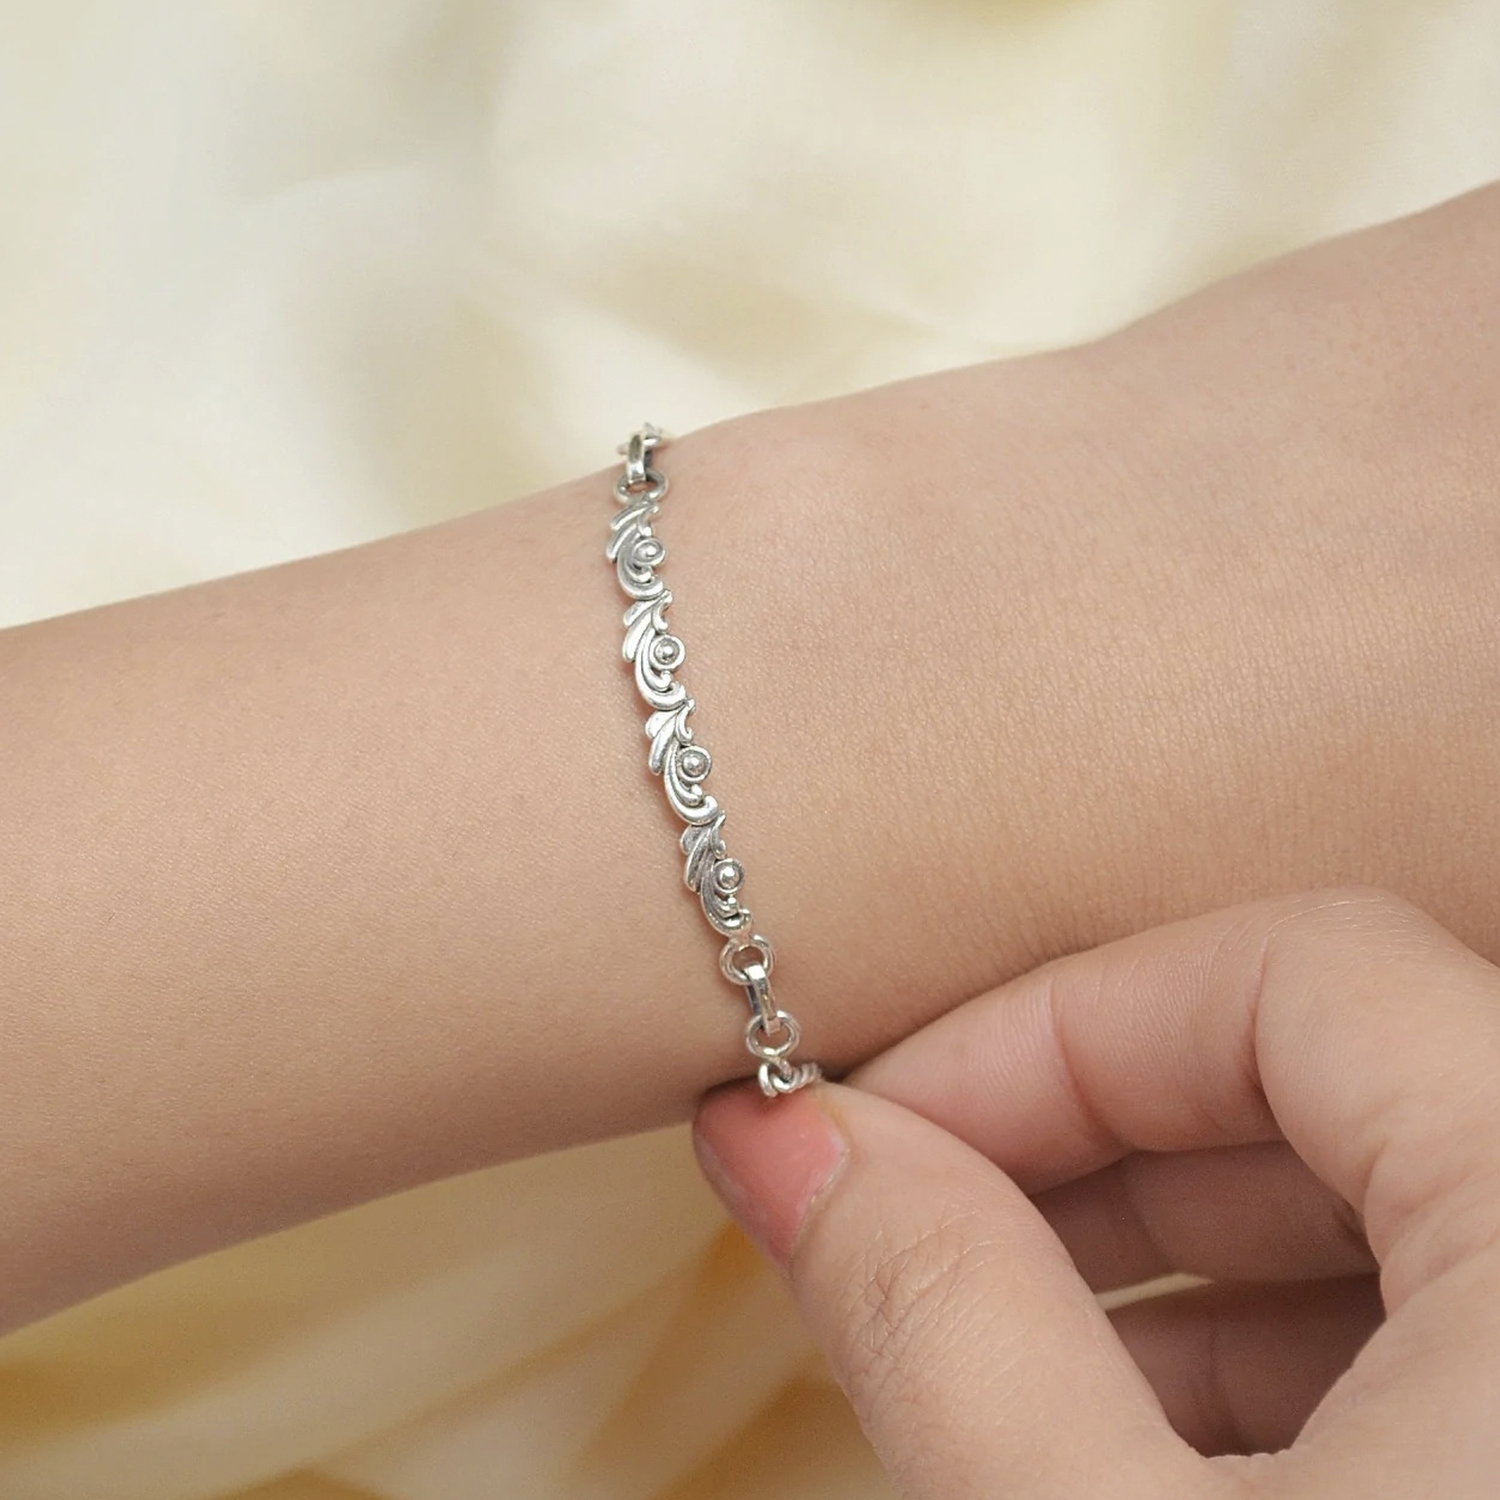 Display more than 161 silver bracelet design best